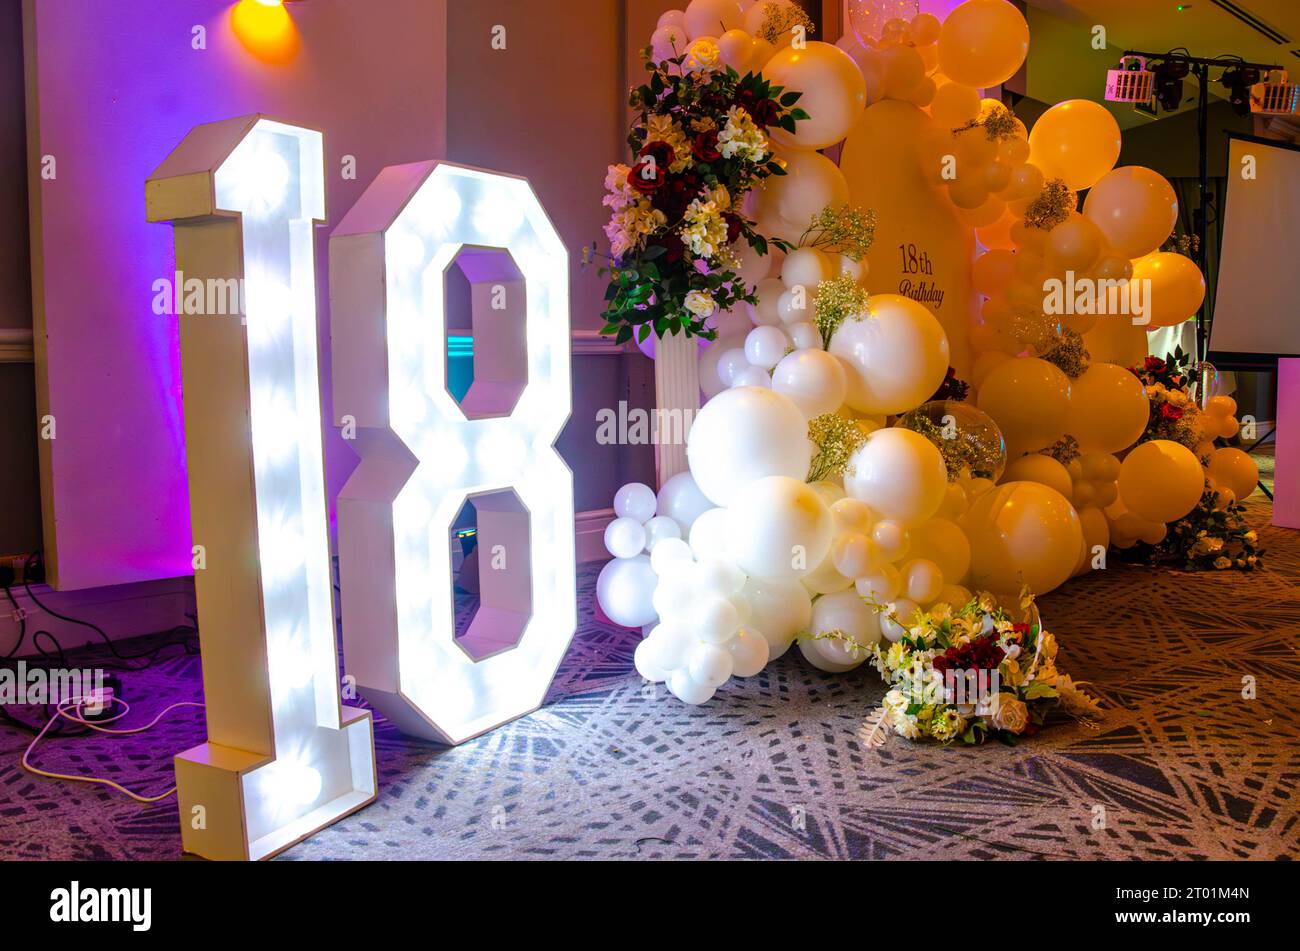 Un panneau décoratif de 18 illuminé, des ballons et un panneau forment une toile de fond lors d'une fête de 18e anniversaire Banque D'Images